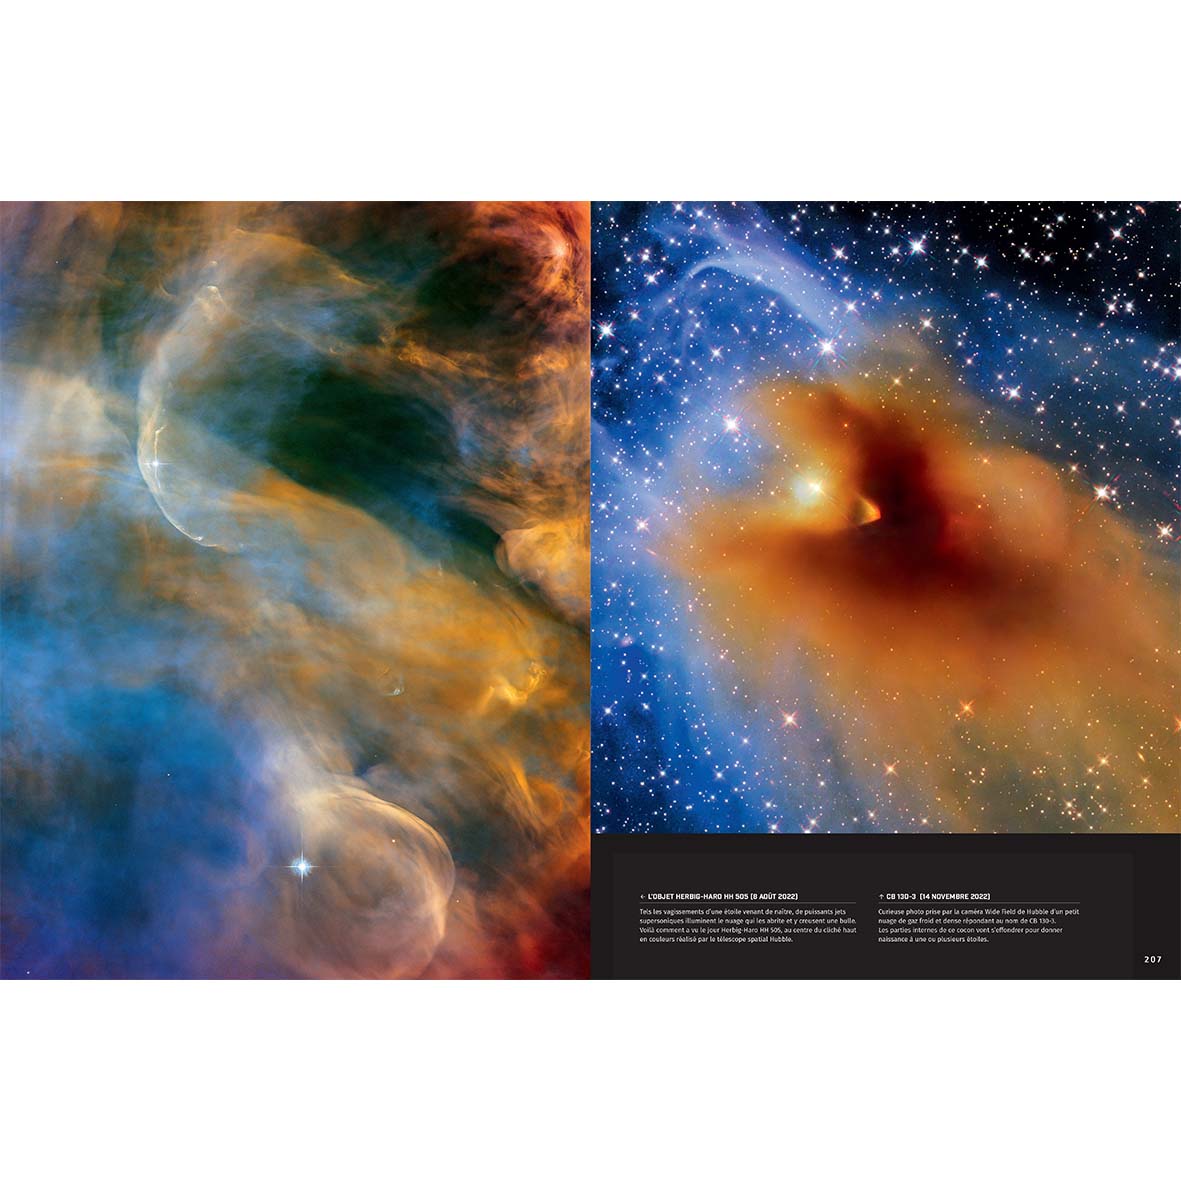 Univers - de l'œil nu au télescope spatial infrarouge James-Webb (nouvelle édition)